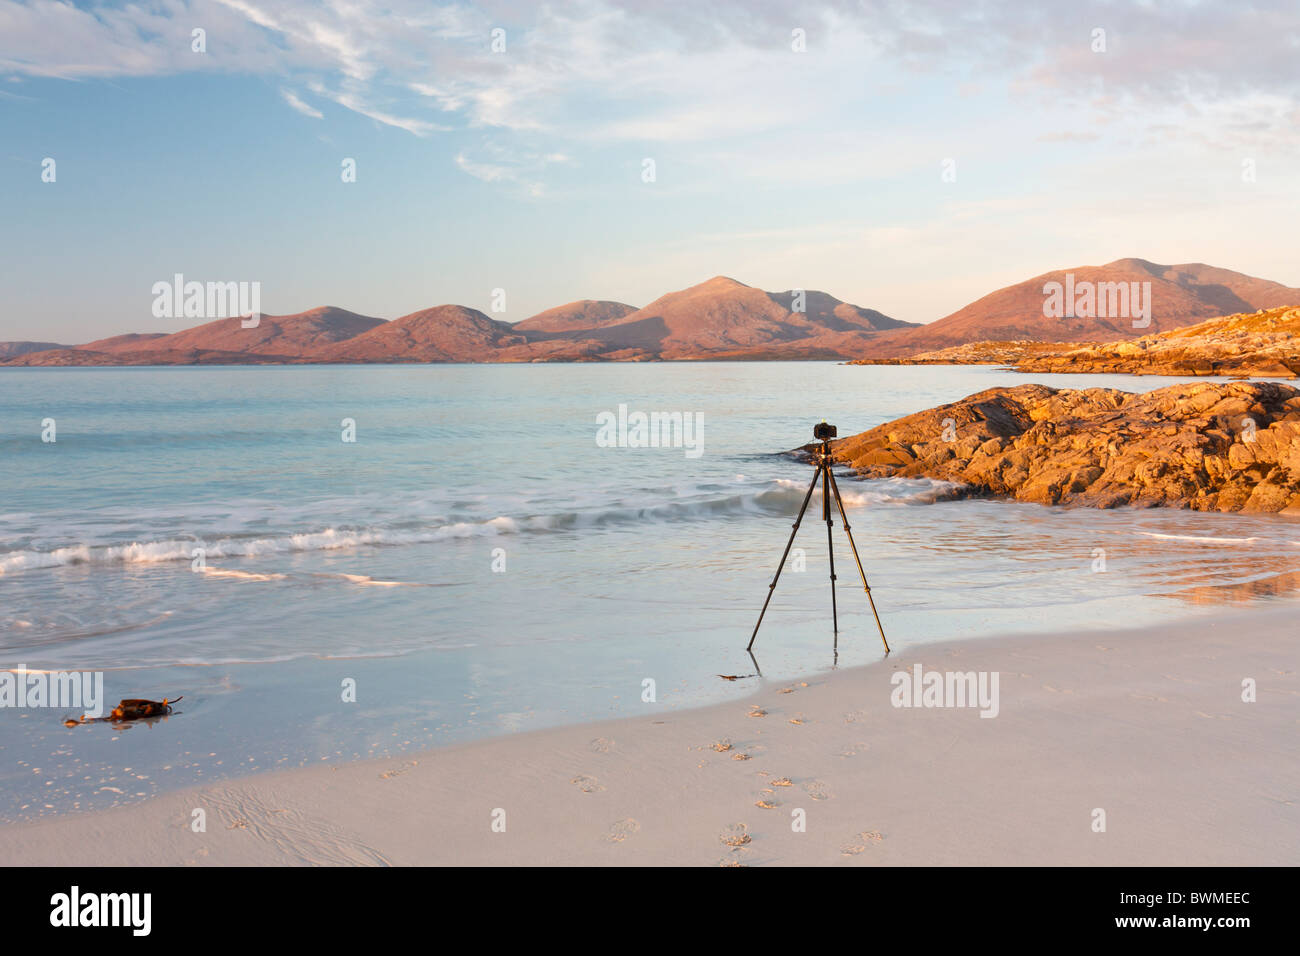 Un fotografi Stativi treppiede dove la sabbia incontra il mare pronto a scattare foto perfette in luce dorata Foto Stock